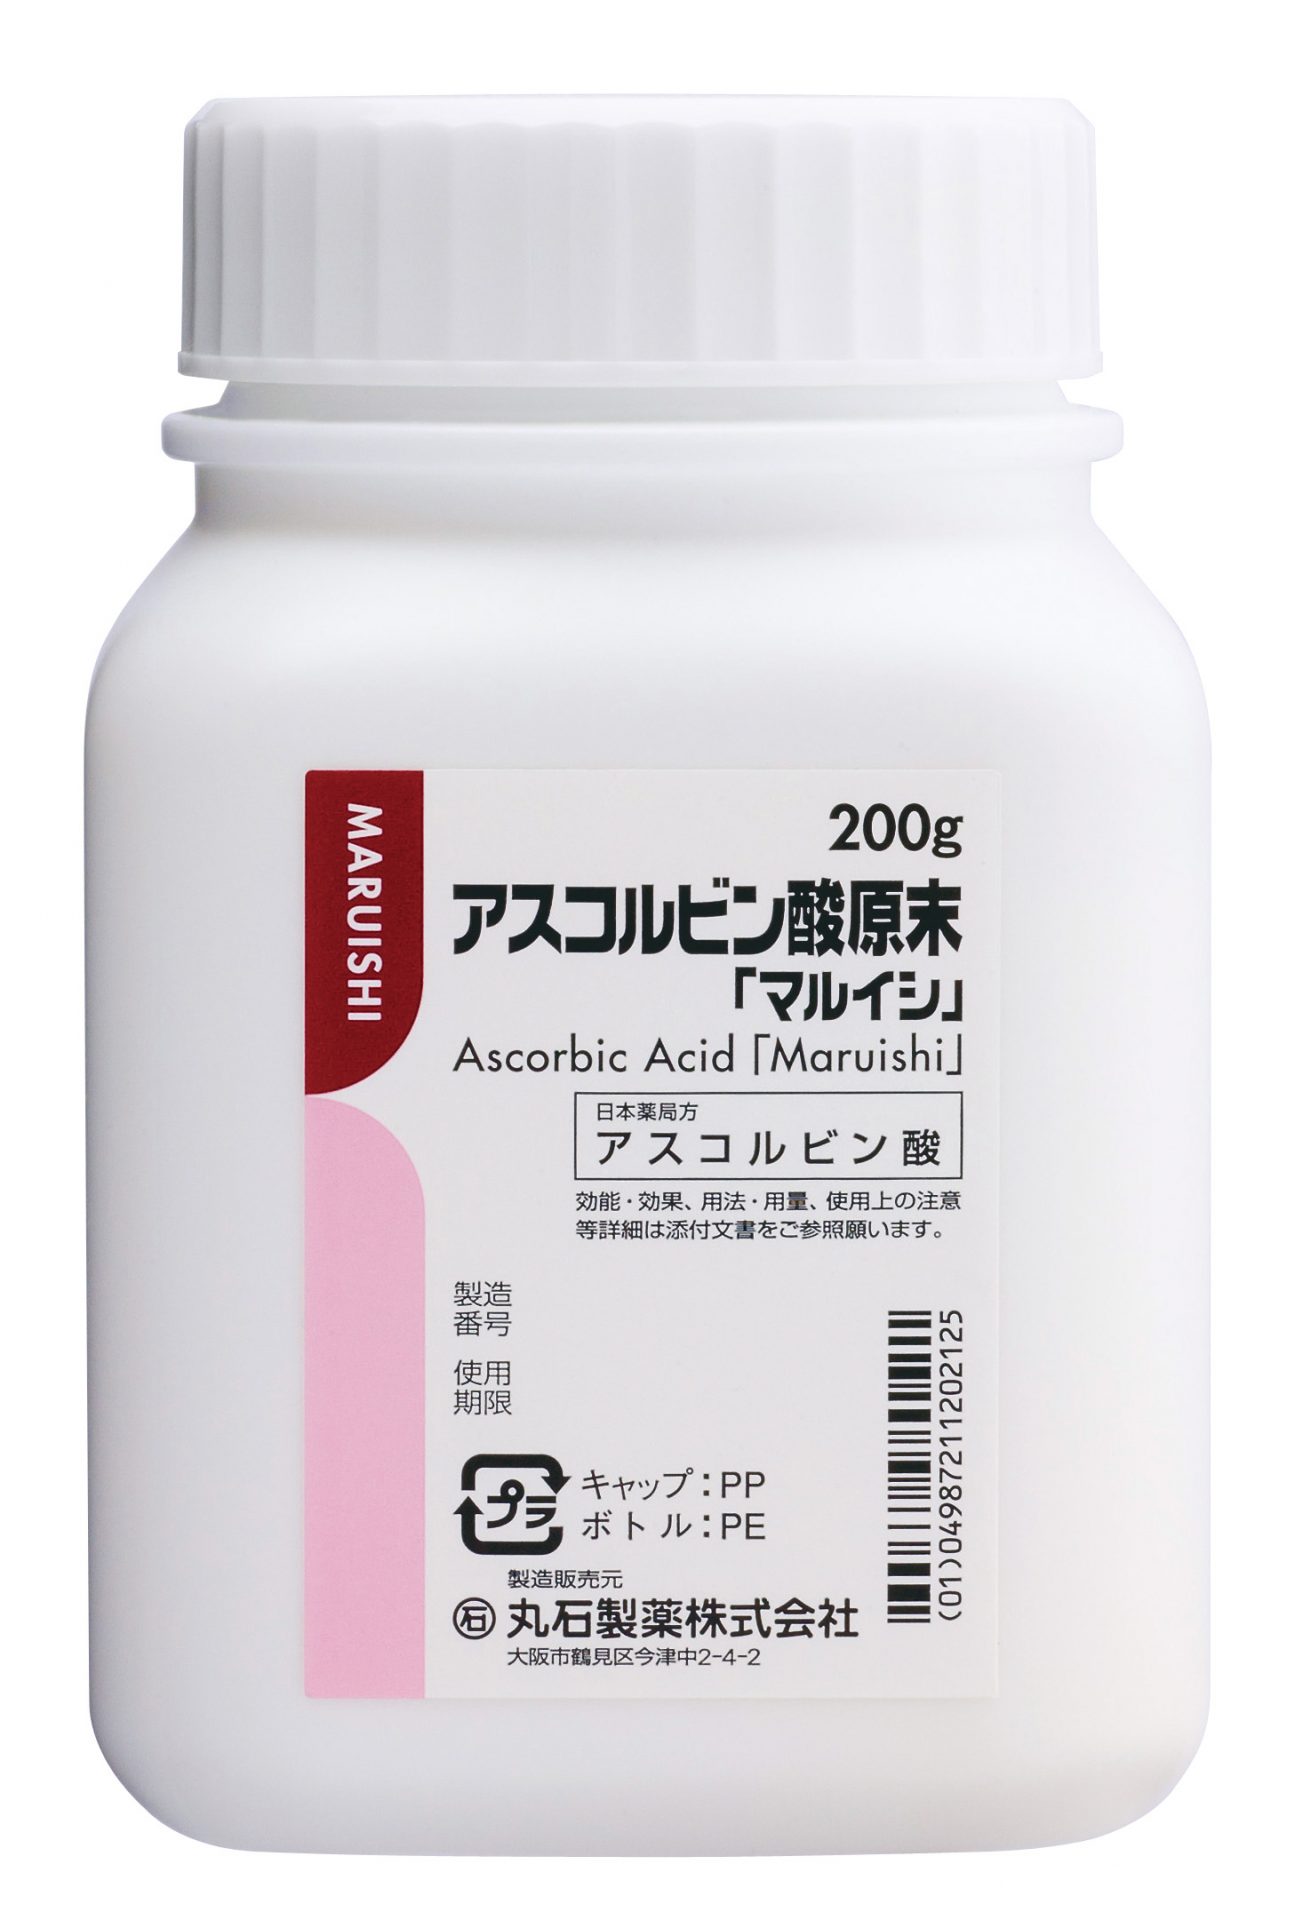 アスコルビン酸原末(200g)